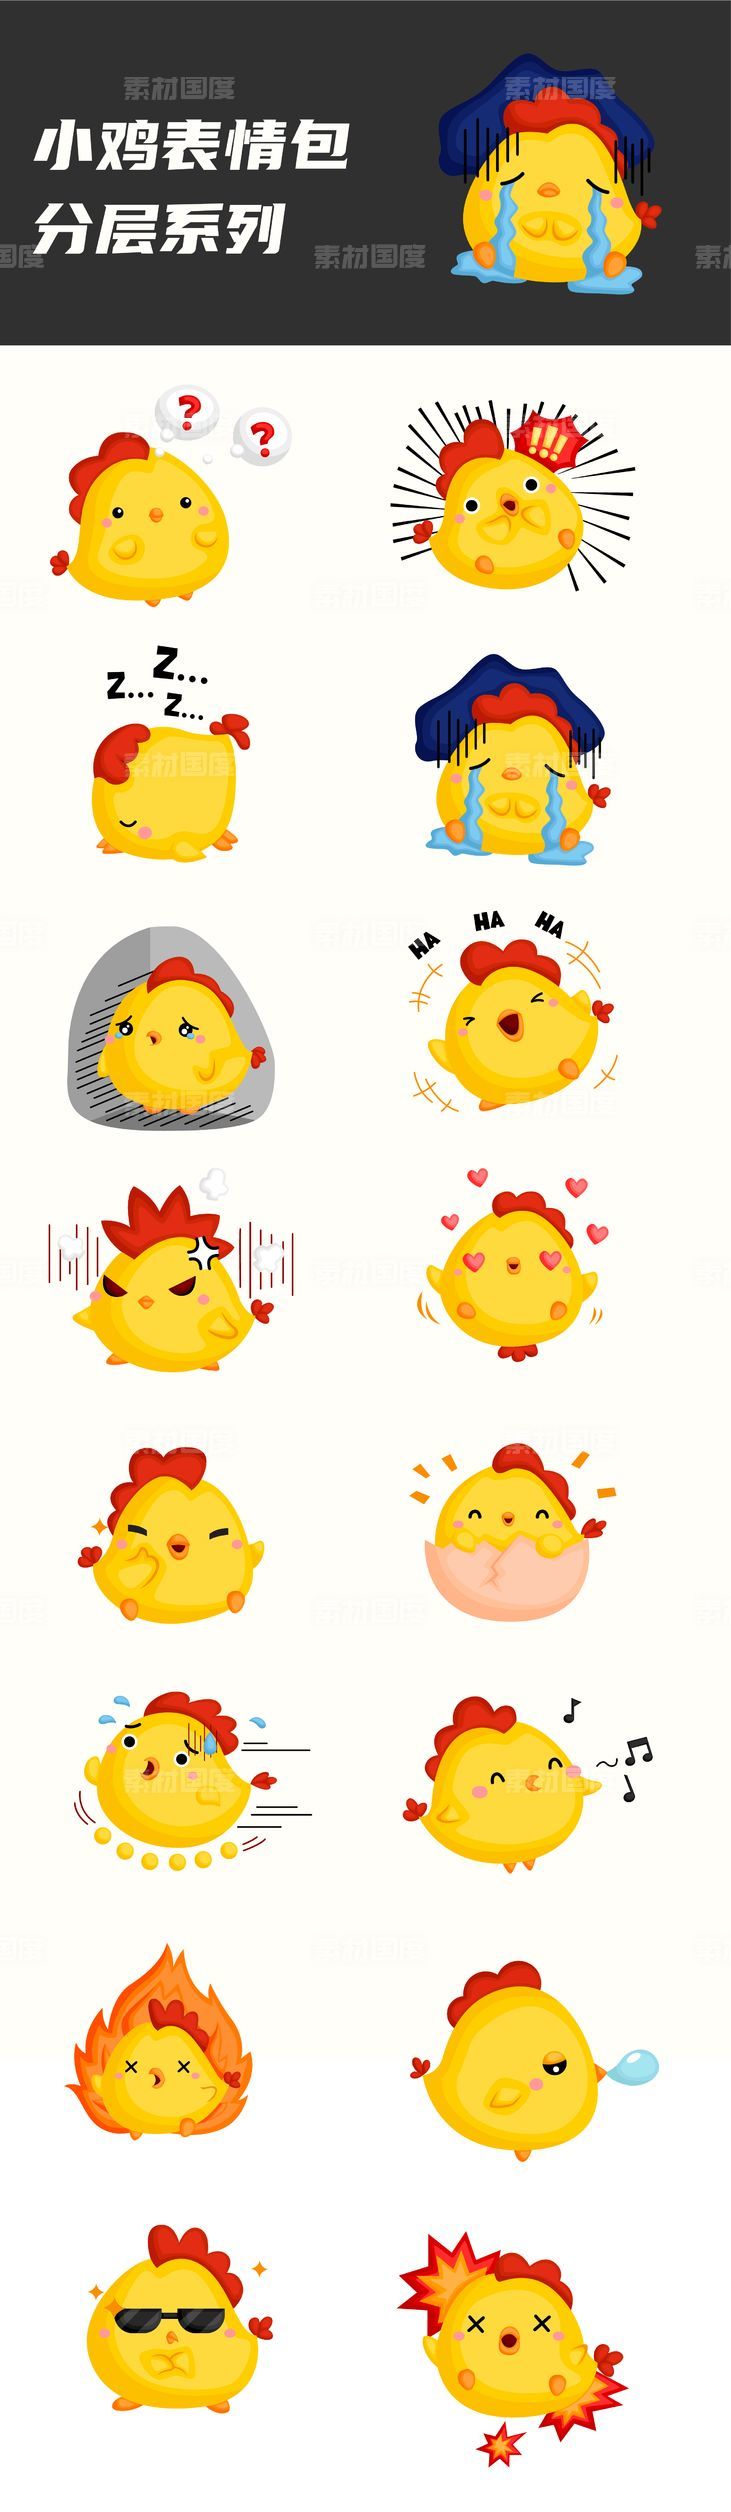 小鸡表情包系列